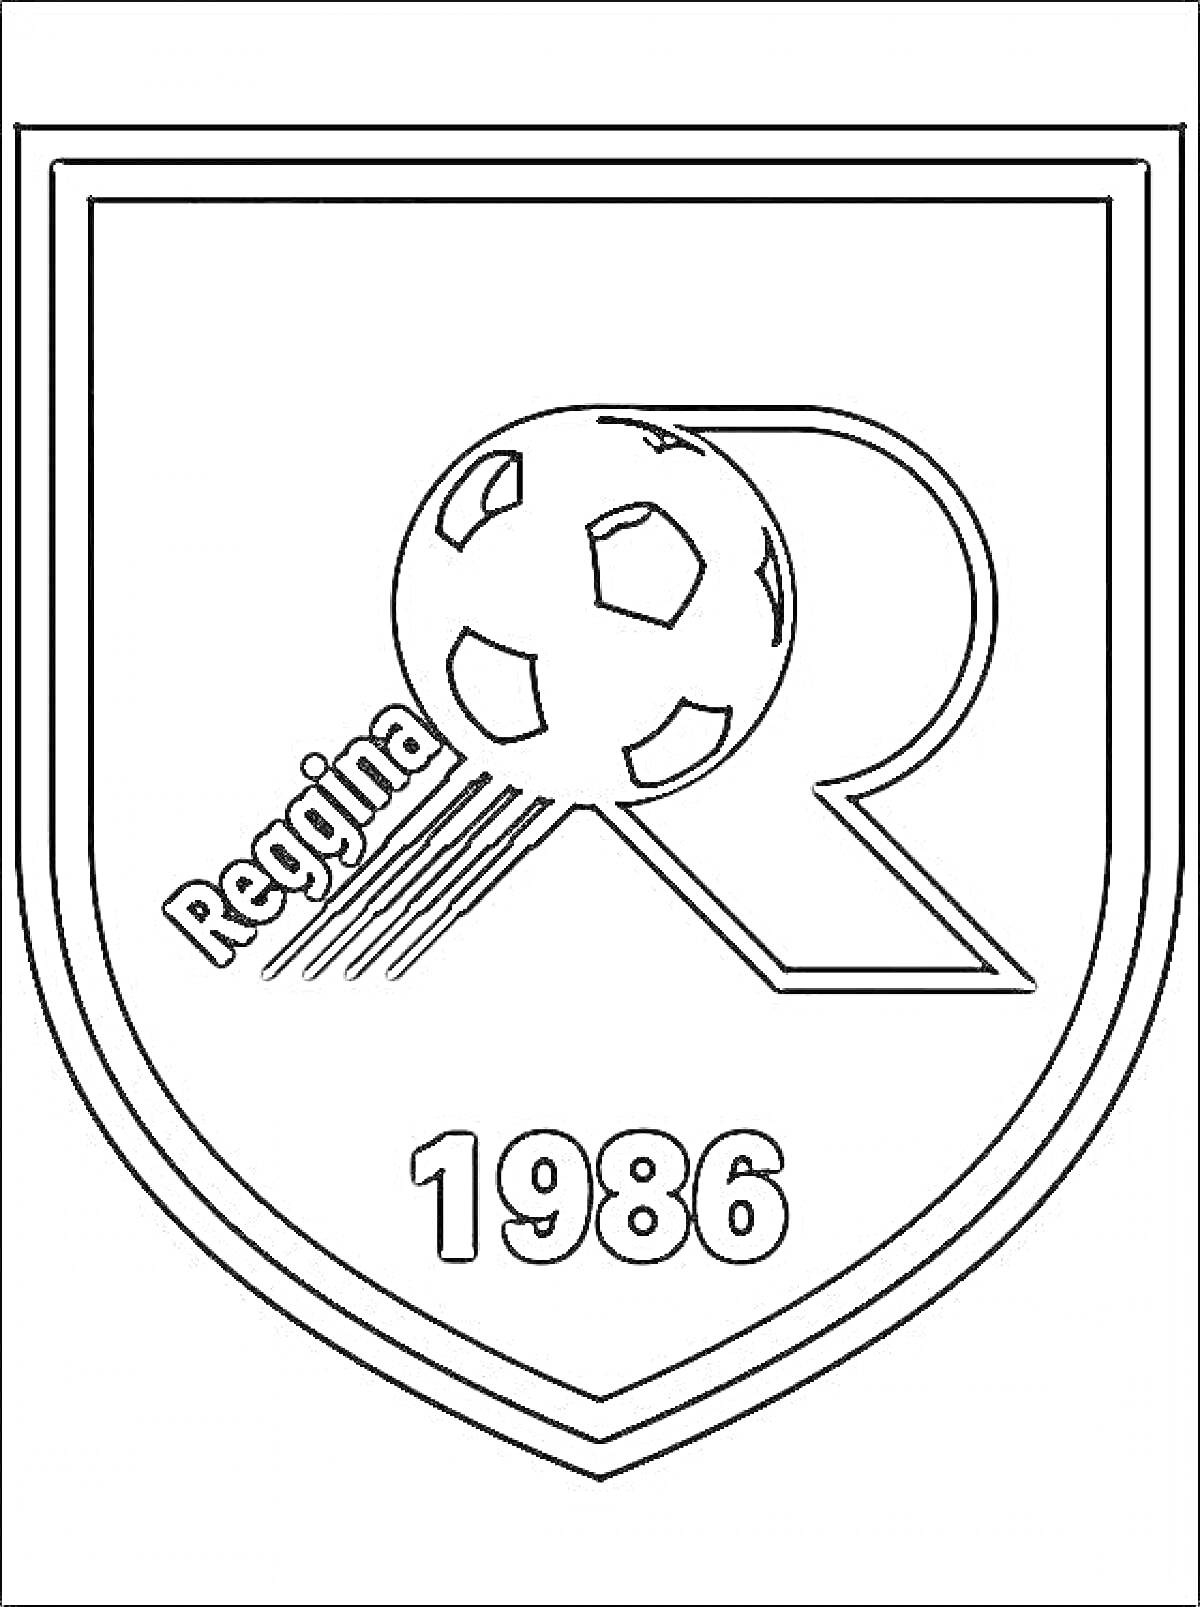 Раскраска Эмблема с обведённым щитом, внутри которой изображена большая буква 